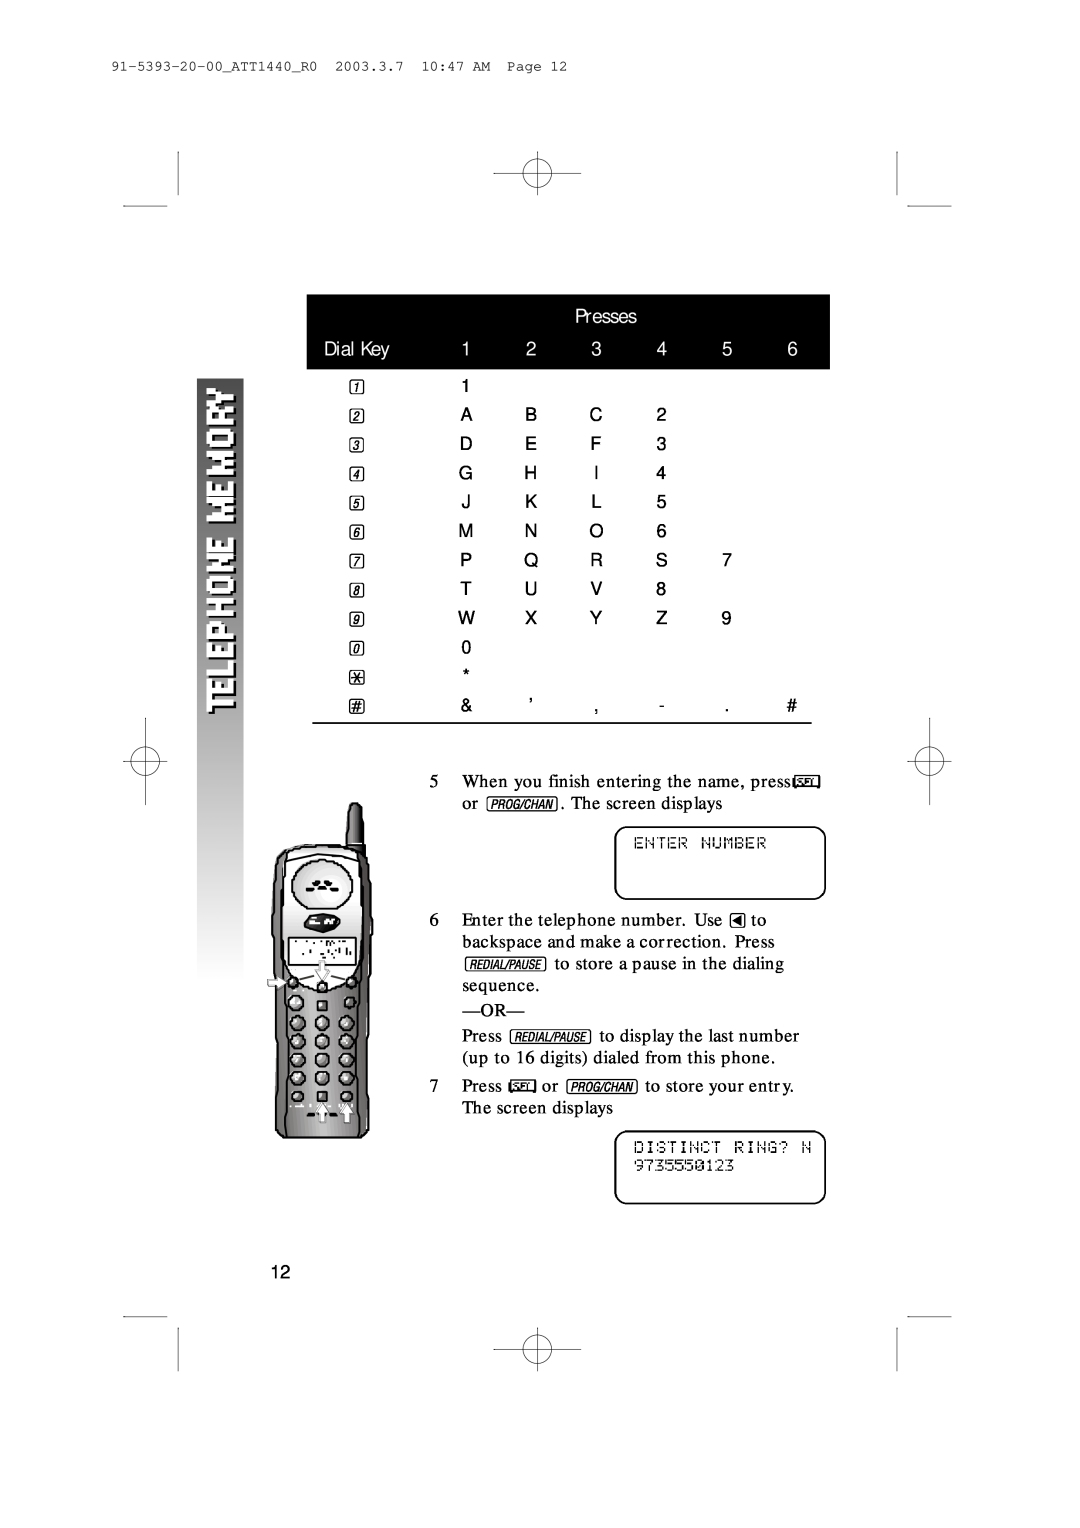 AT&T 1440 user manual Dial Key, Presses 